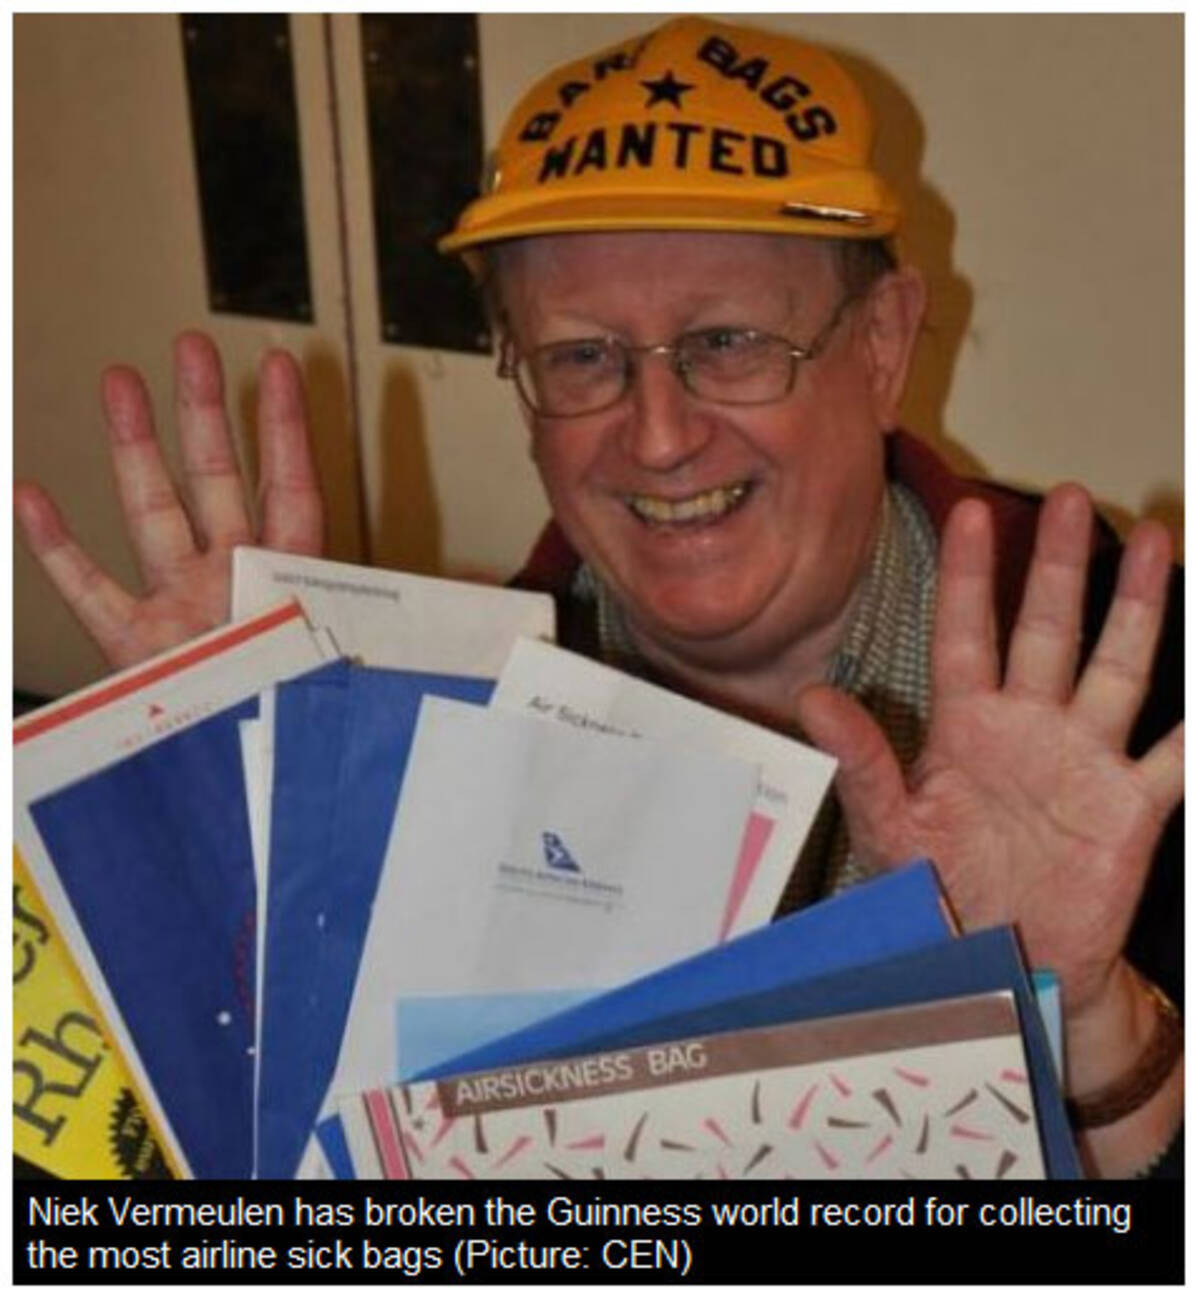 74歳のおじいちゃん 6016枚のエチケット袋を集めてギネス記録に 11年3月9日 エキサイトニュース